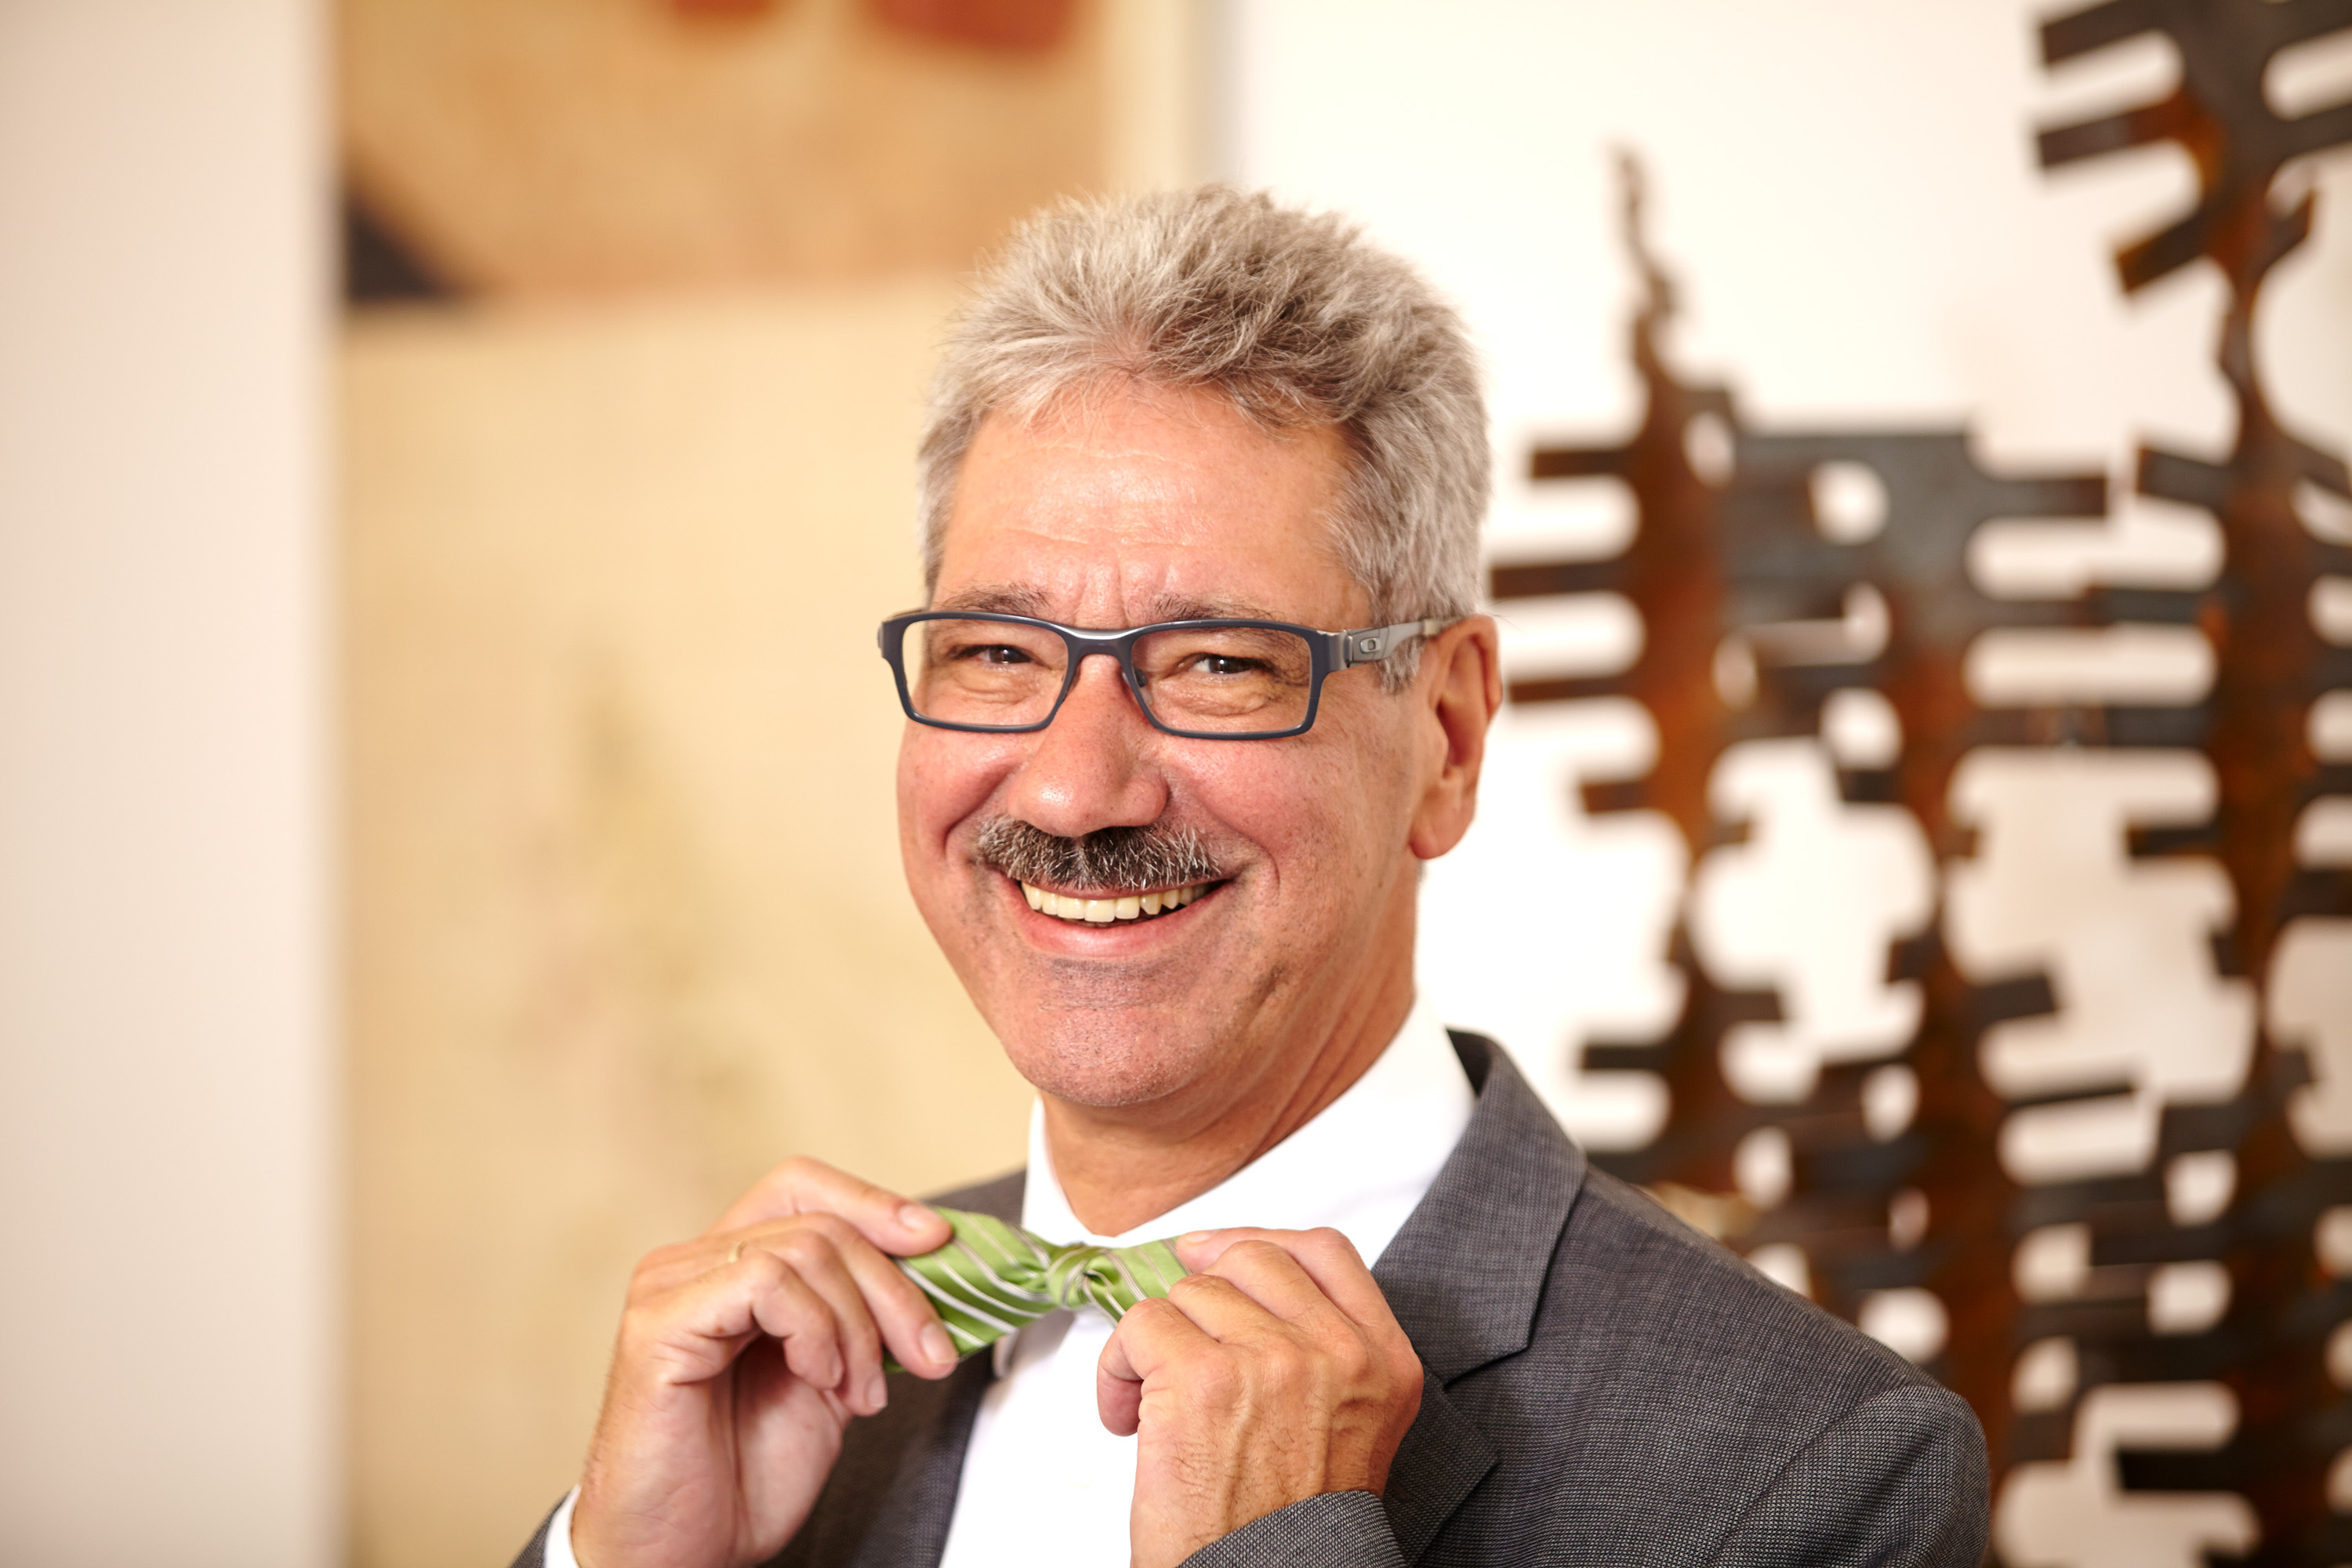 Lächelnder Mann mit grüner Fliege als Portraitfoto